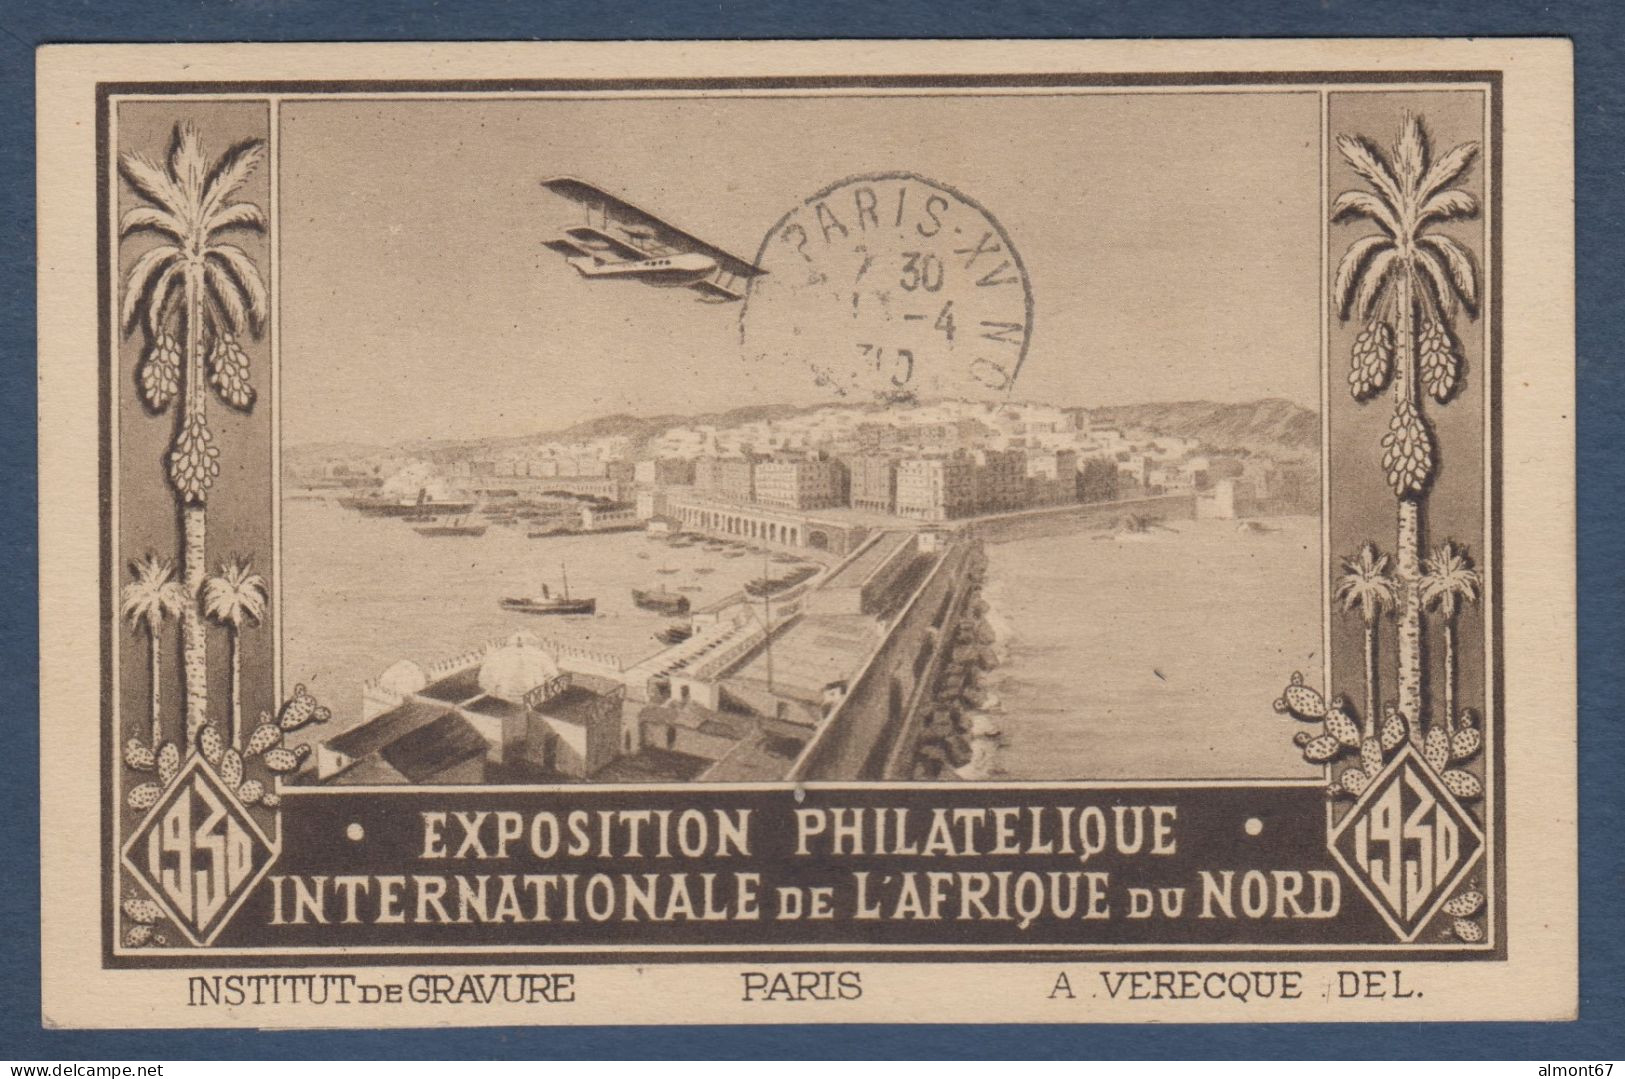 Algérie N° 56b ( 5e Arbre ) En Paire Avec Normal Sur Carte Recommandée  Voyage Alger Paris - Briefe U. Dokumente